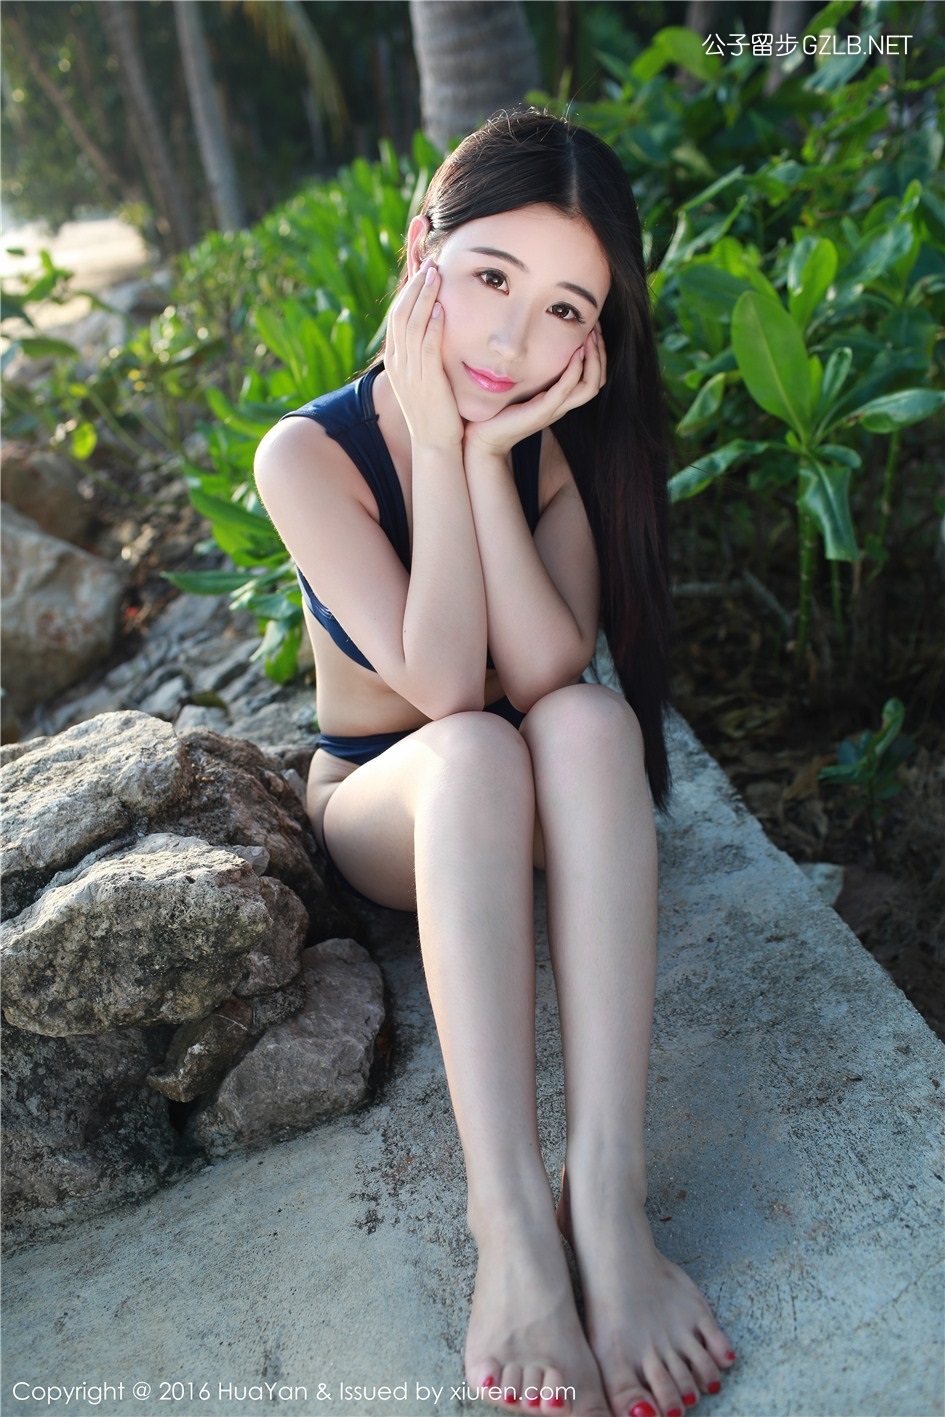 可爱型美女模特谢芷馨Sindy泰国旅拍，美臀性感完美(第8张)